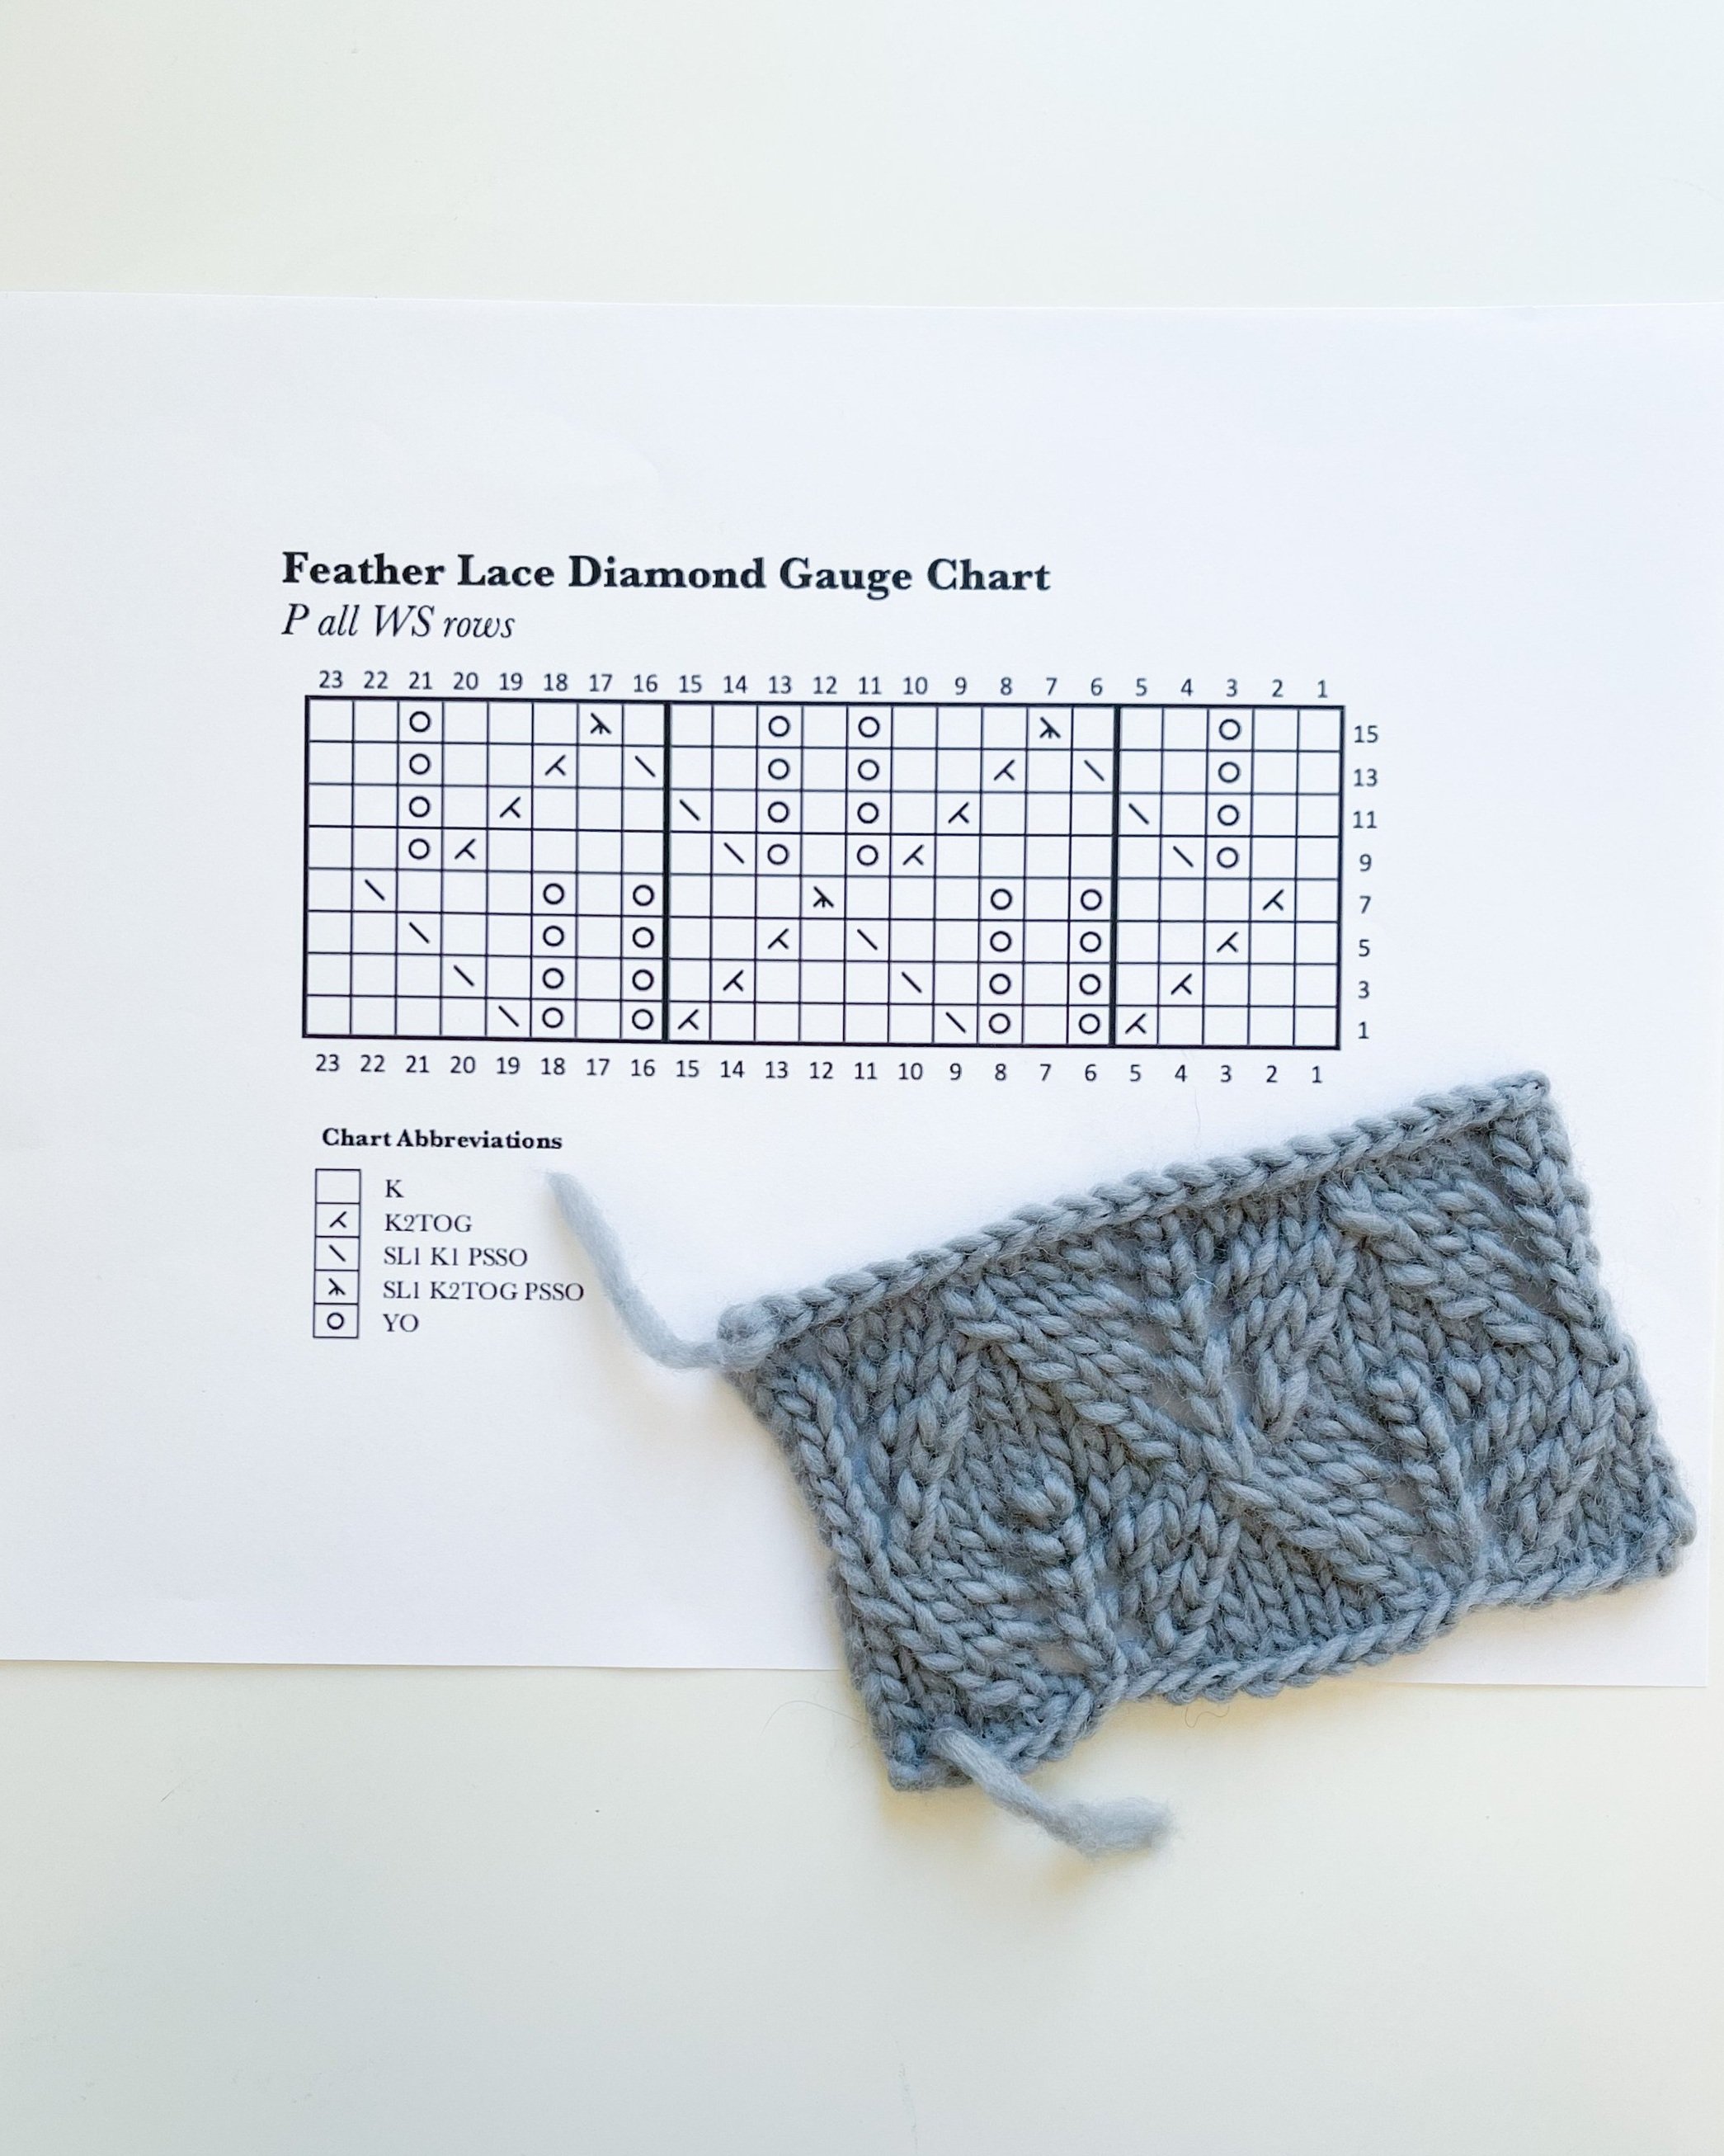 16 inch Circular Knitting Needles Set Knitting Kit Size 13 10 8 6 4 0